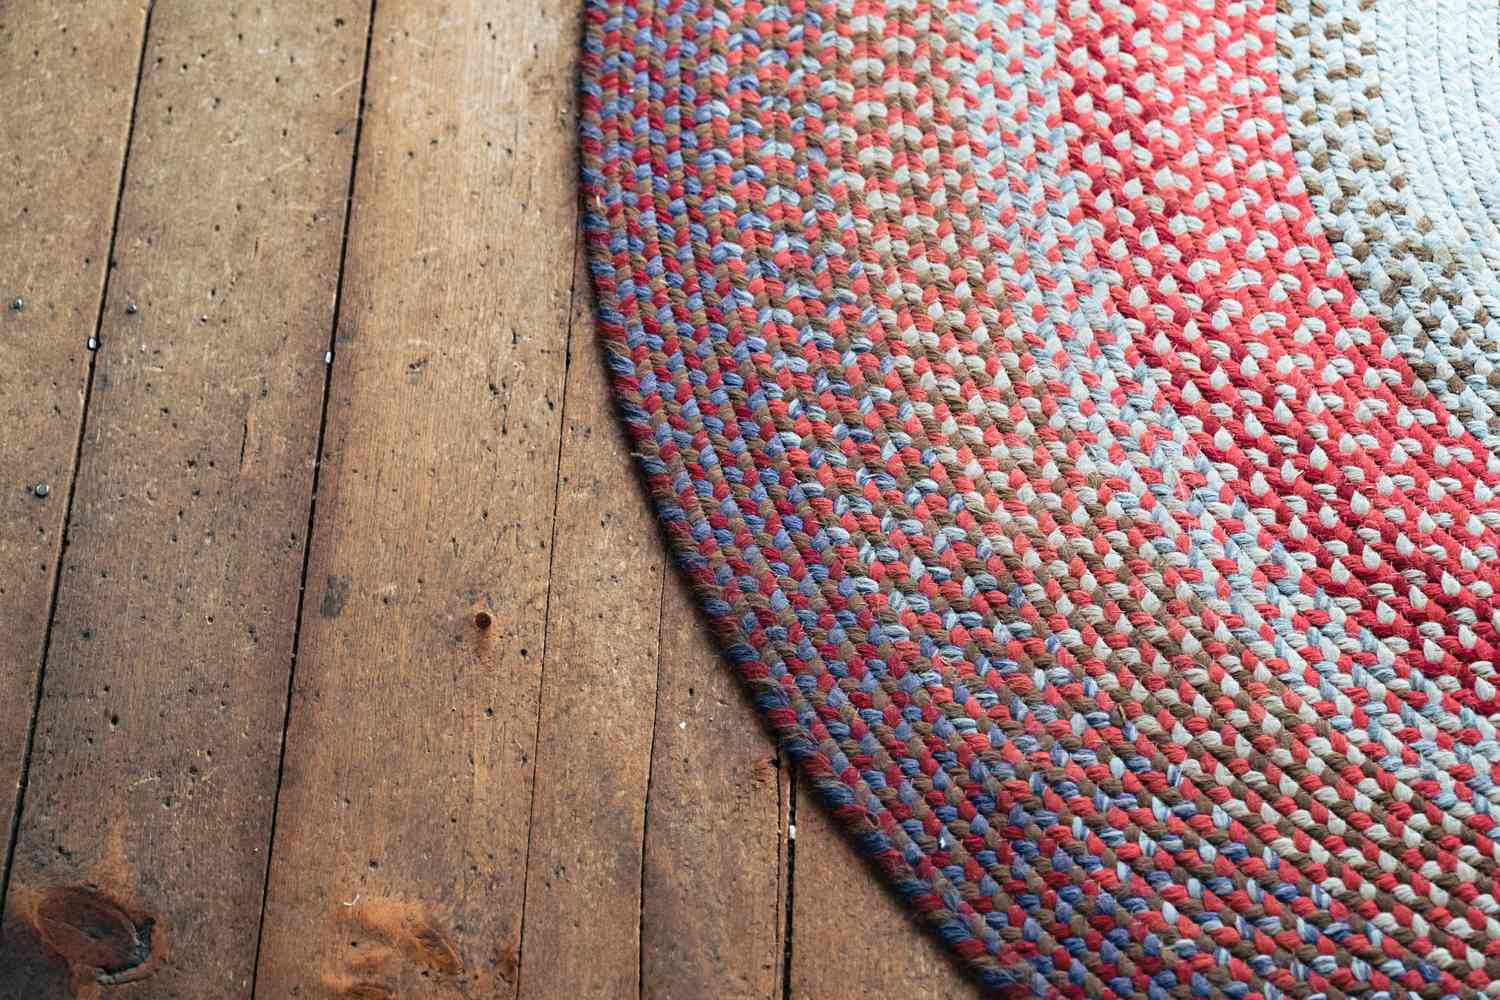 Colorful round braided rug on hardwood floor